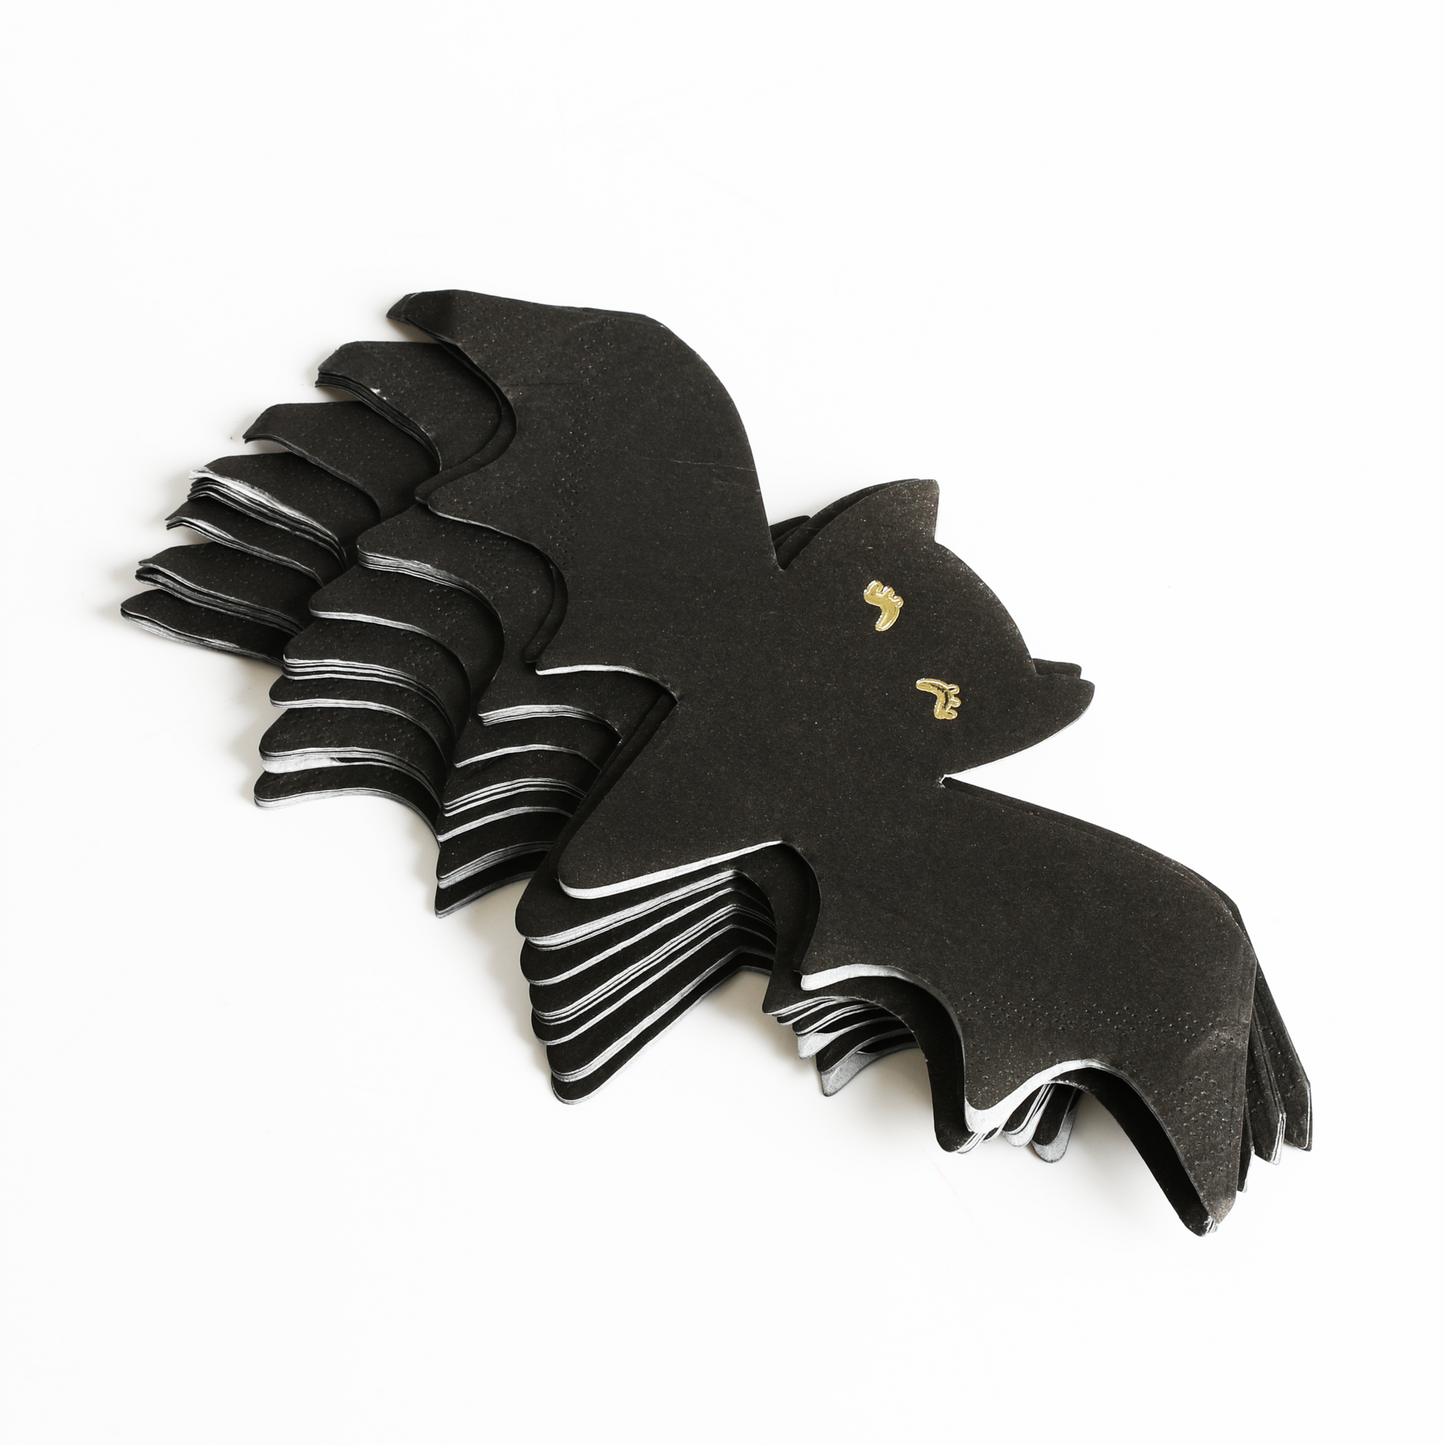 Black Bat Shaped Paper Napkins with Gold Foil Eyes Pack of 20